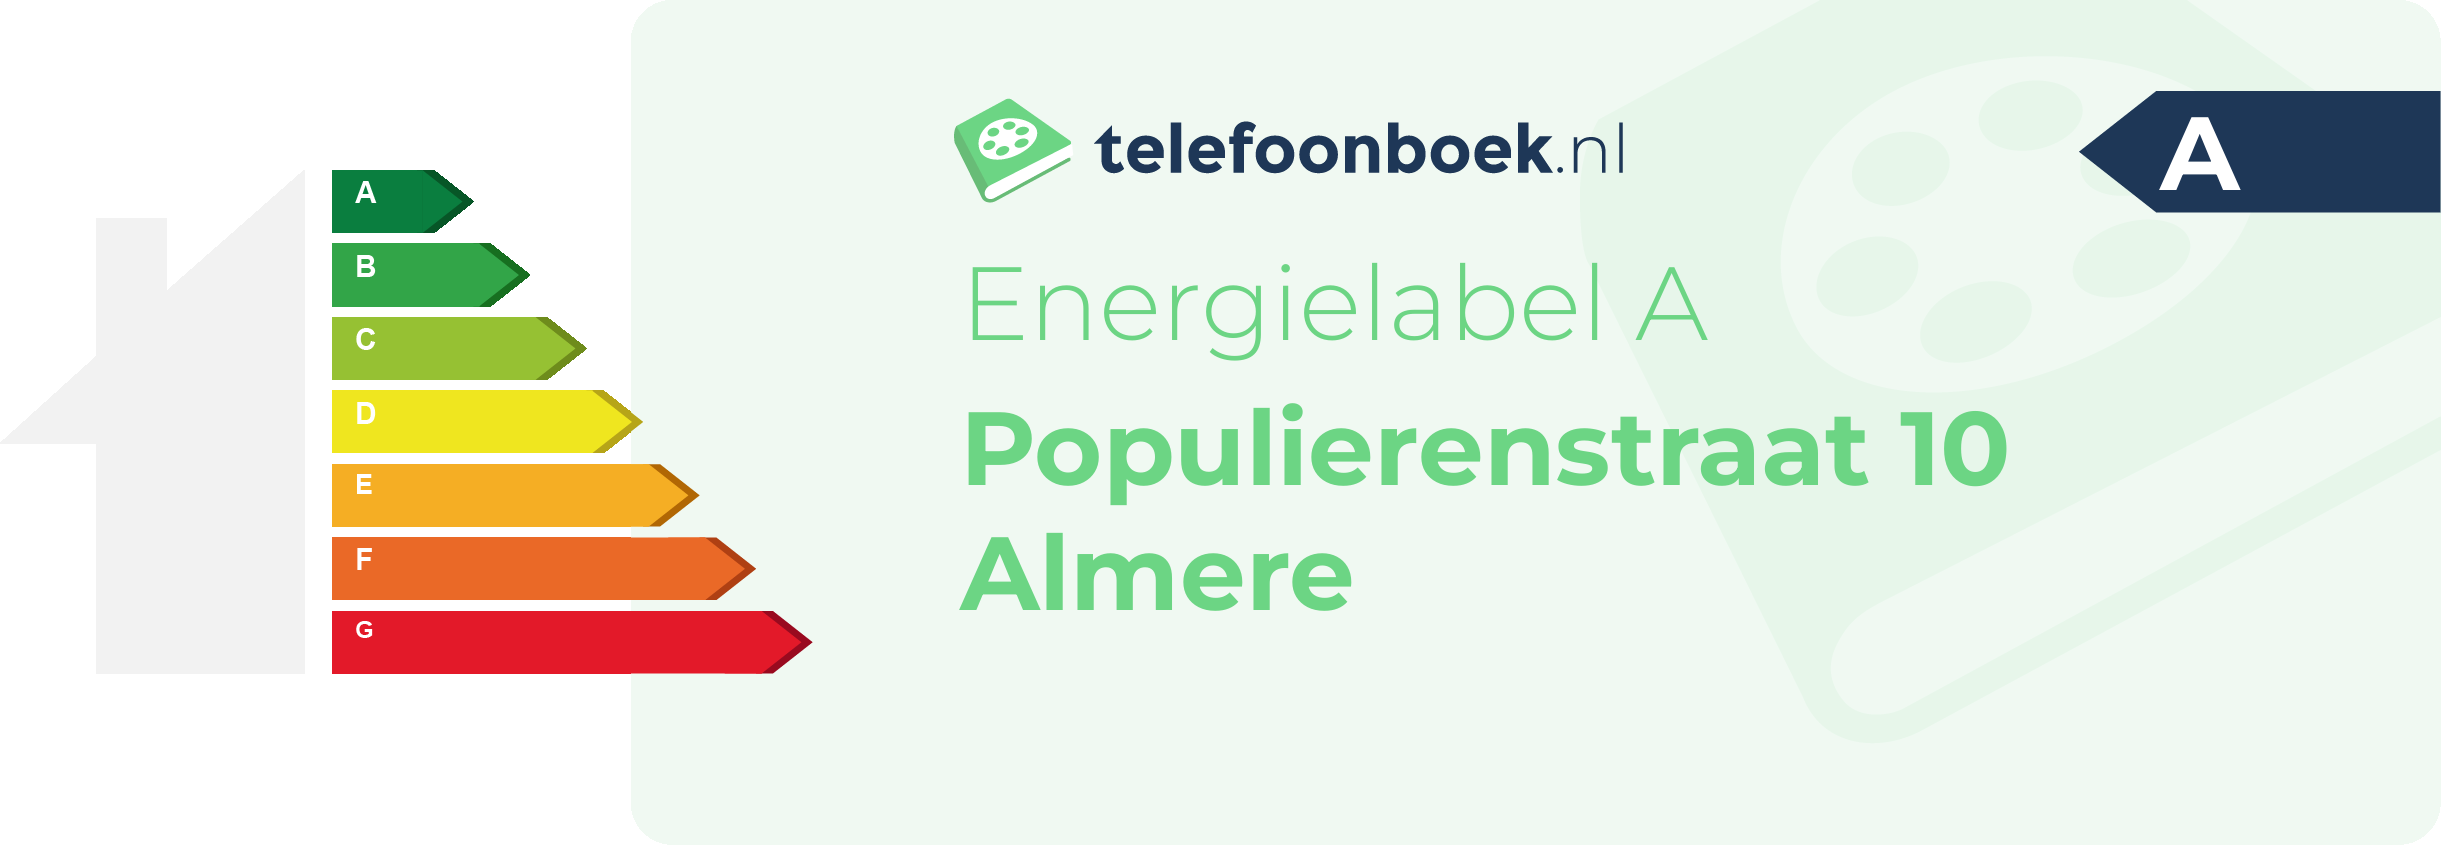 Energielabel Populierenstraat 10 Almere